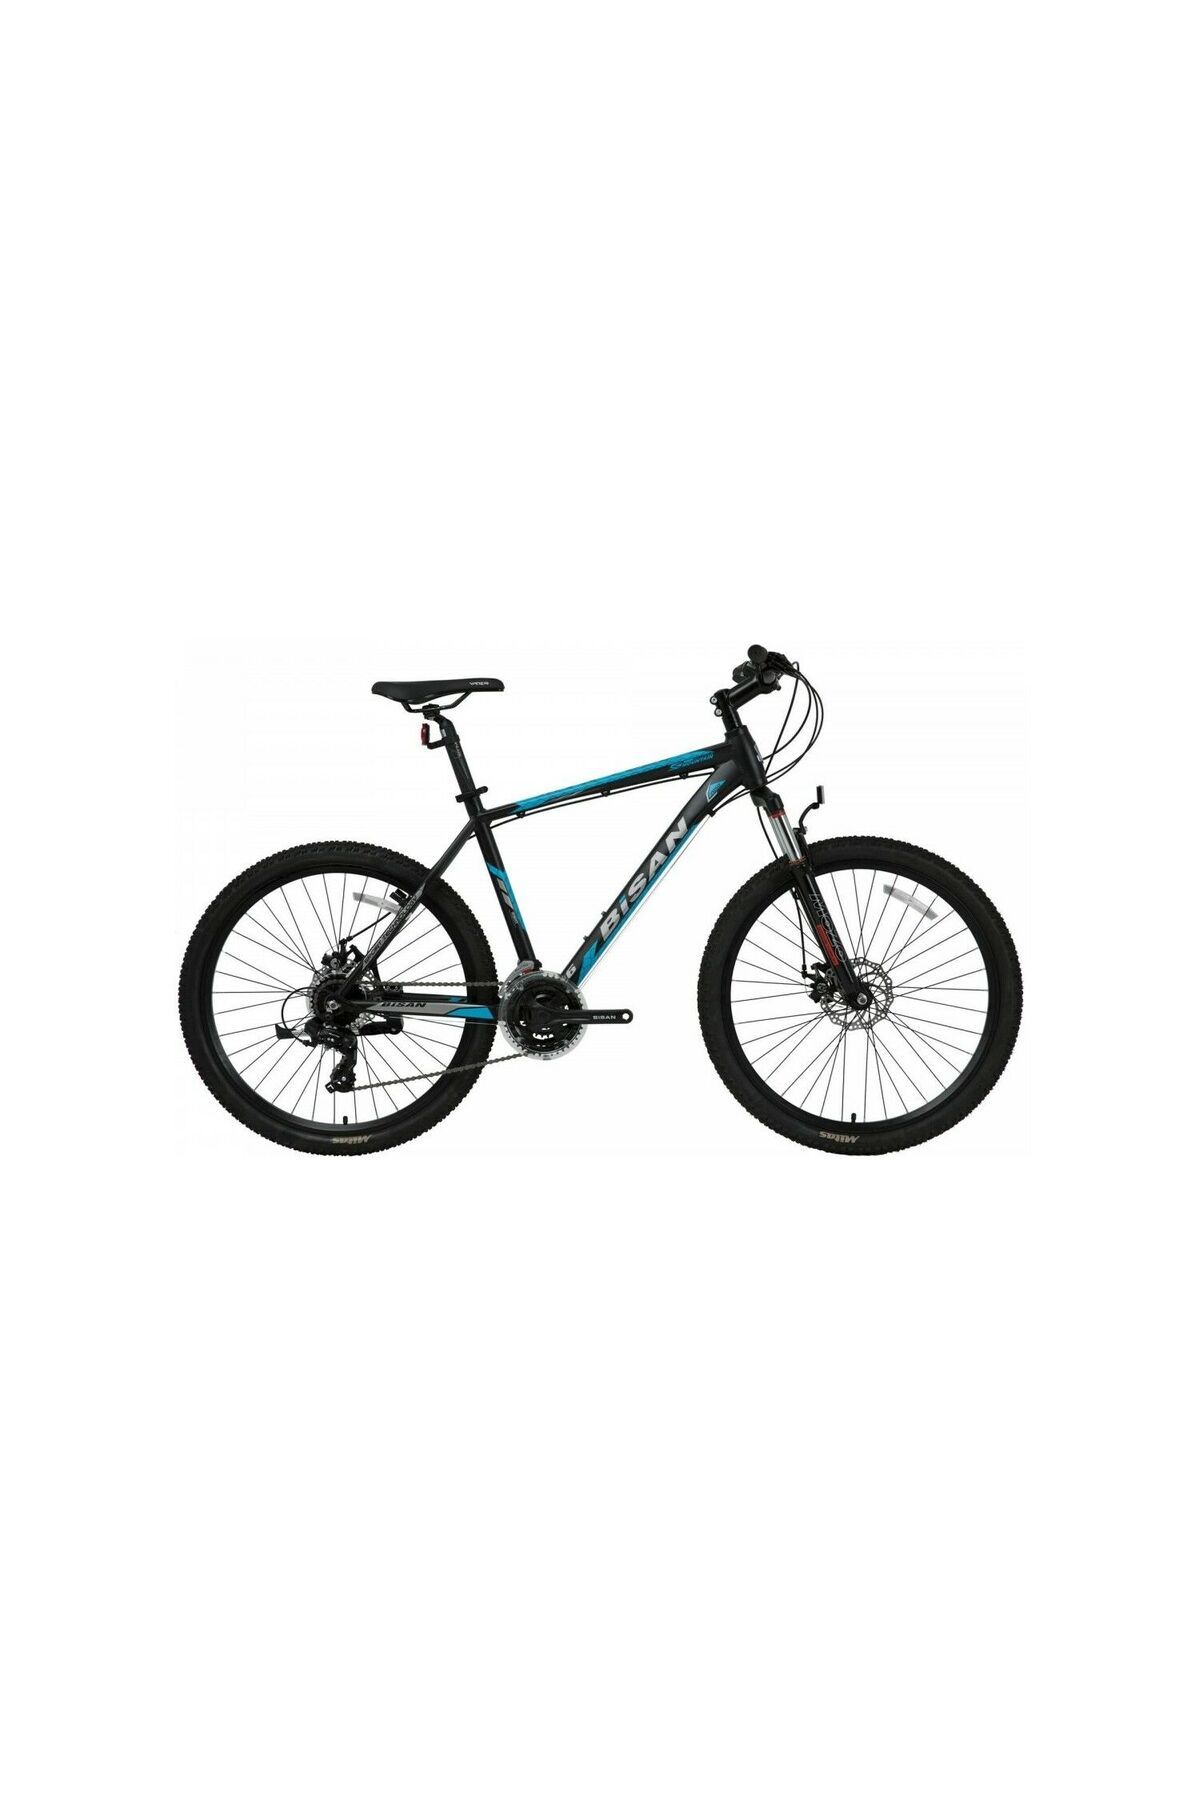 Bisan BİSAN MTX 7050 27,5 Jant 21 Vites HD Dağ Bisikleti MTB Siyah - Mavi 48CM